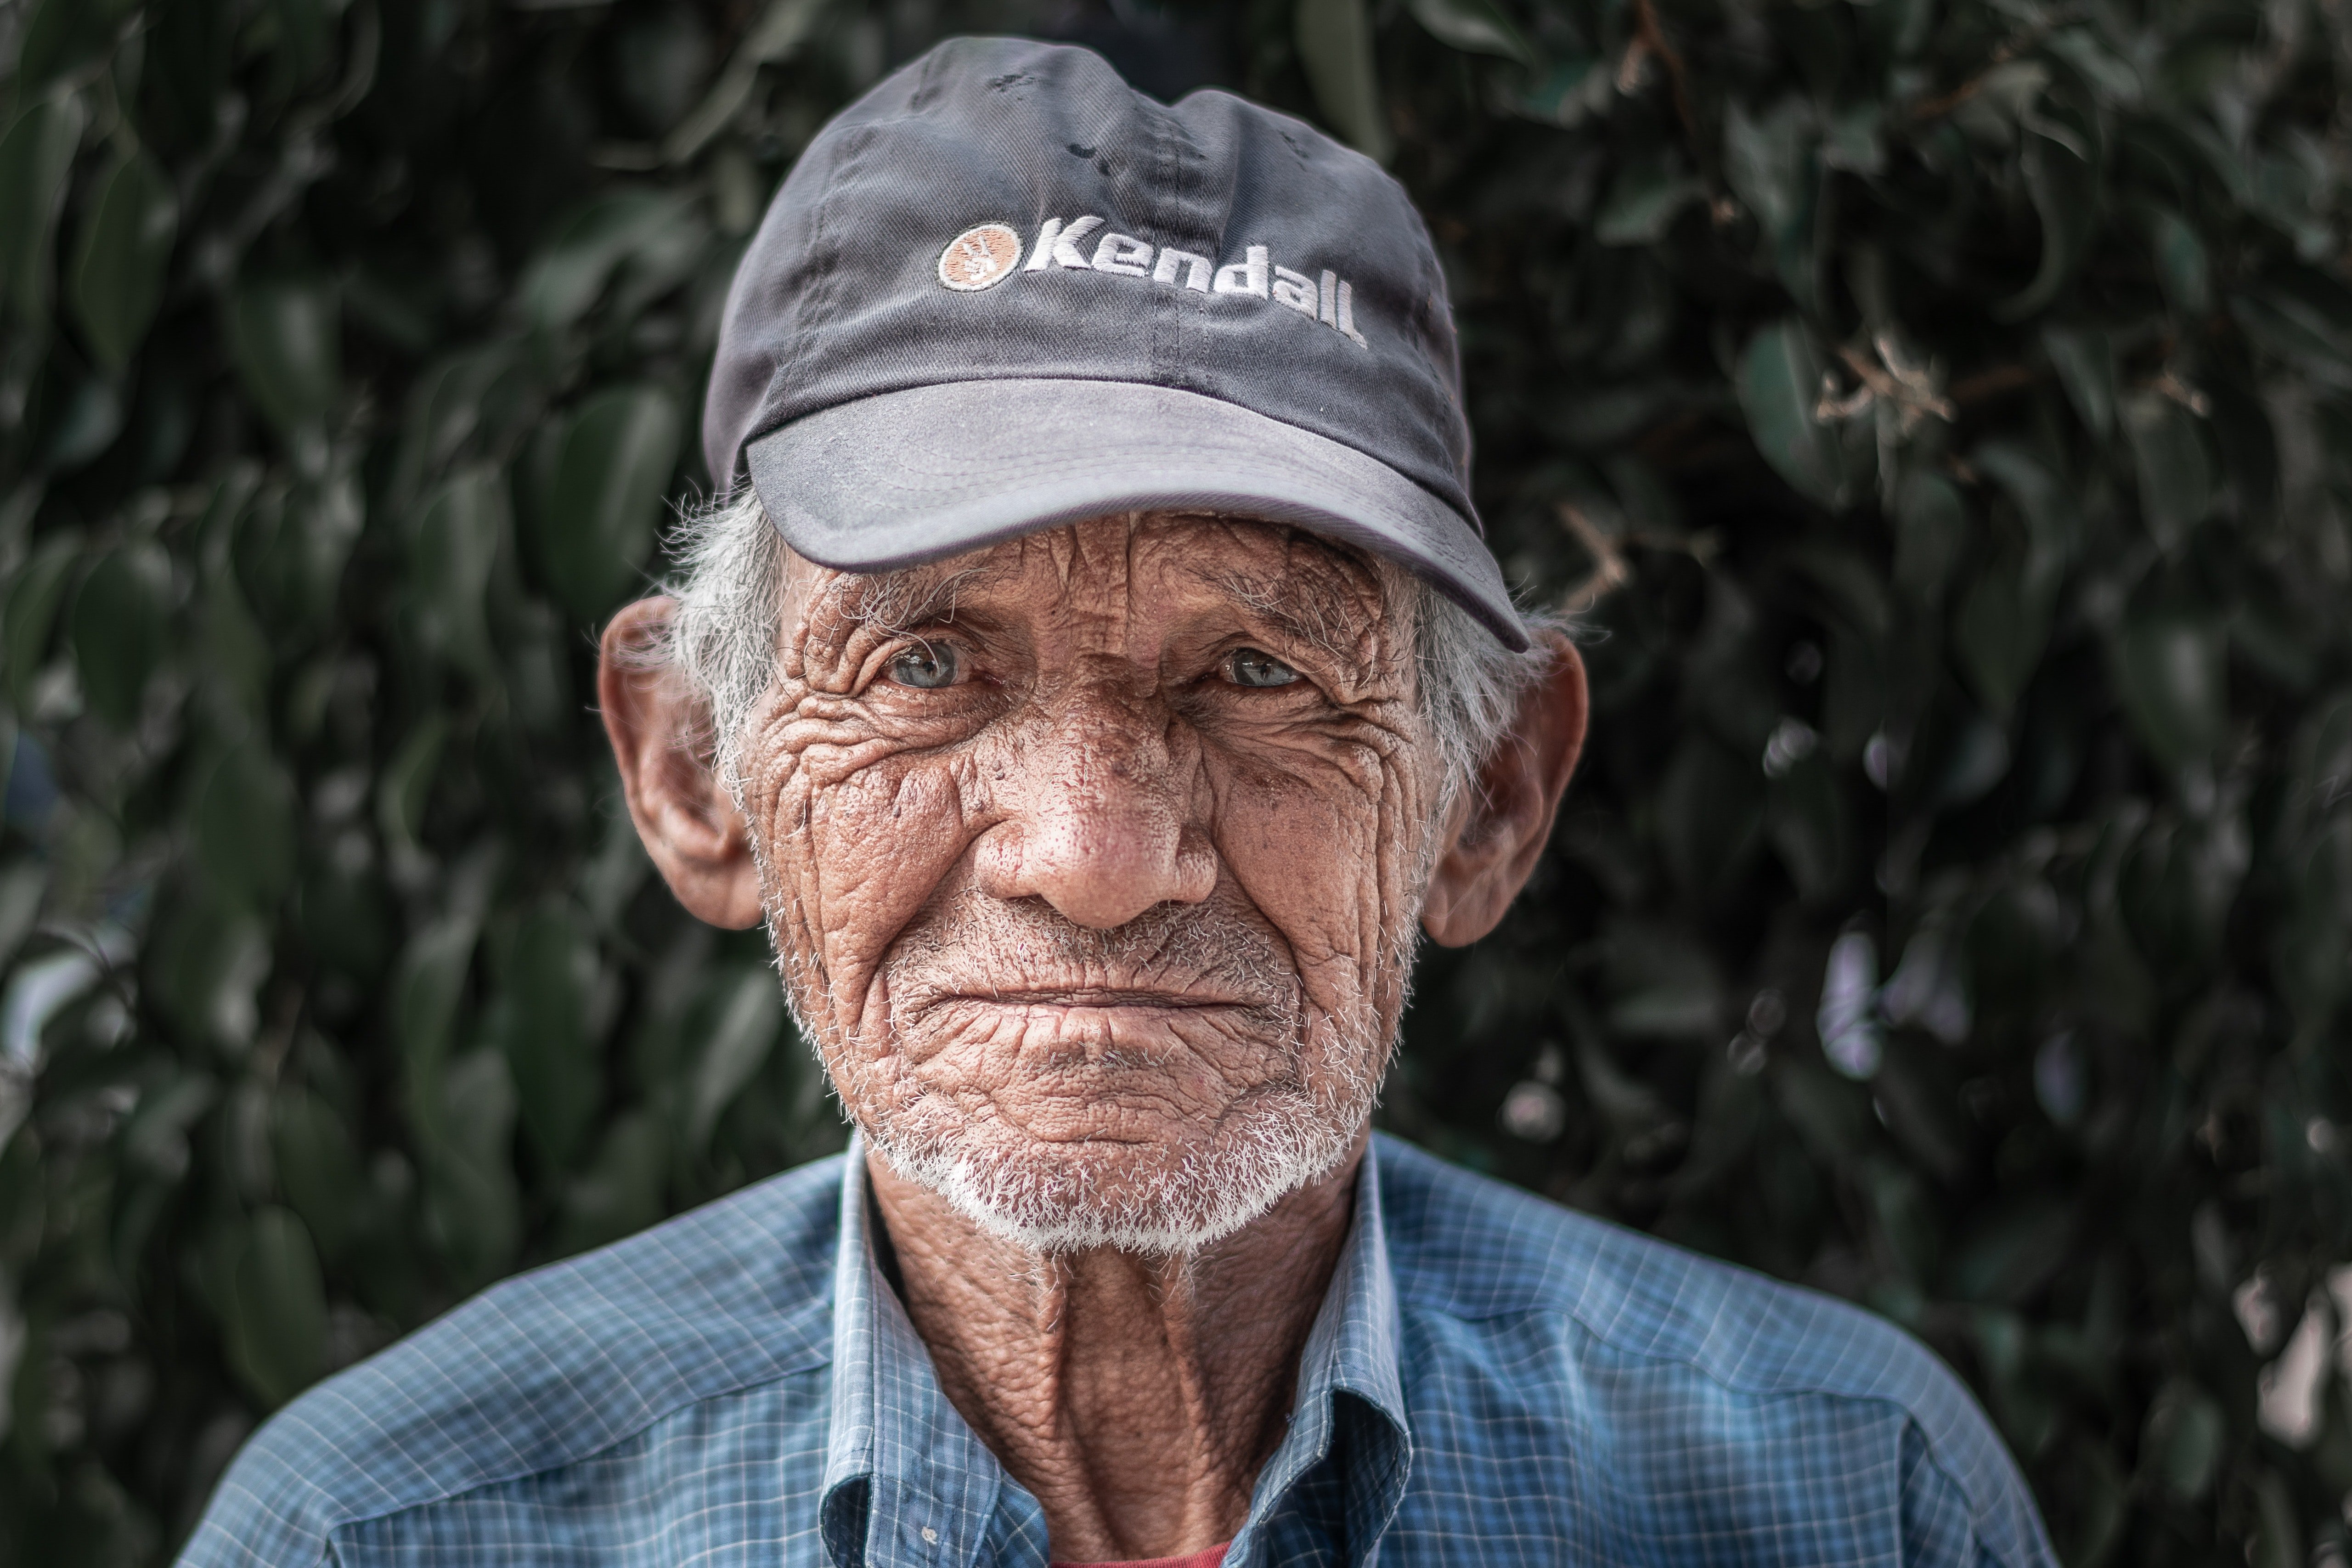 An elderly man wearing a blue collard shirt and a black cap | Source: Pexels 